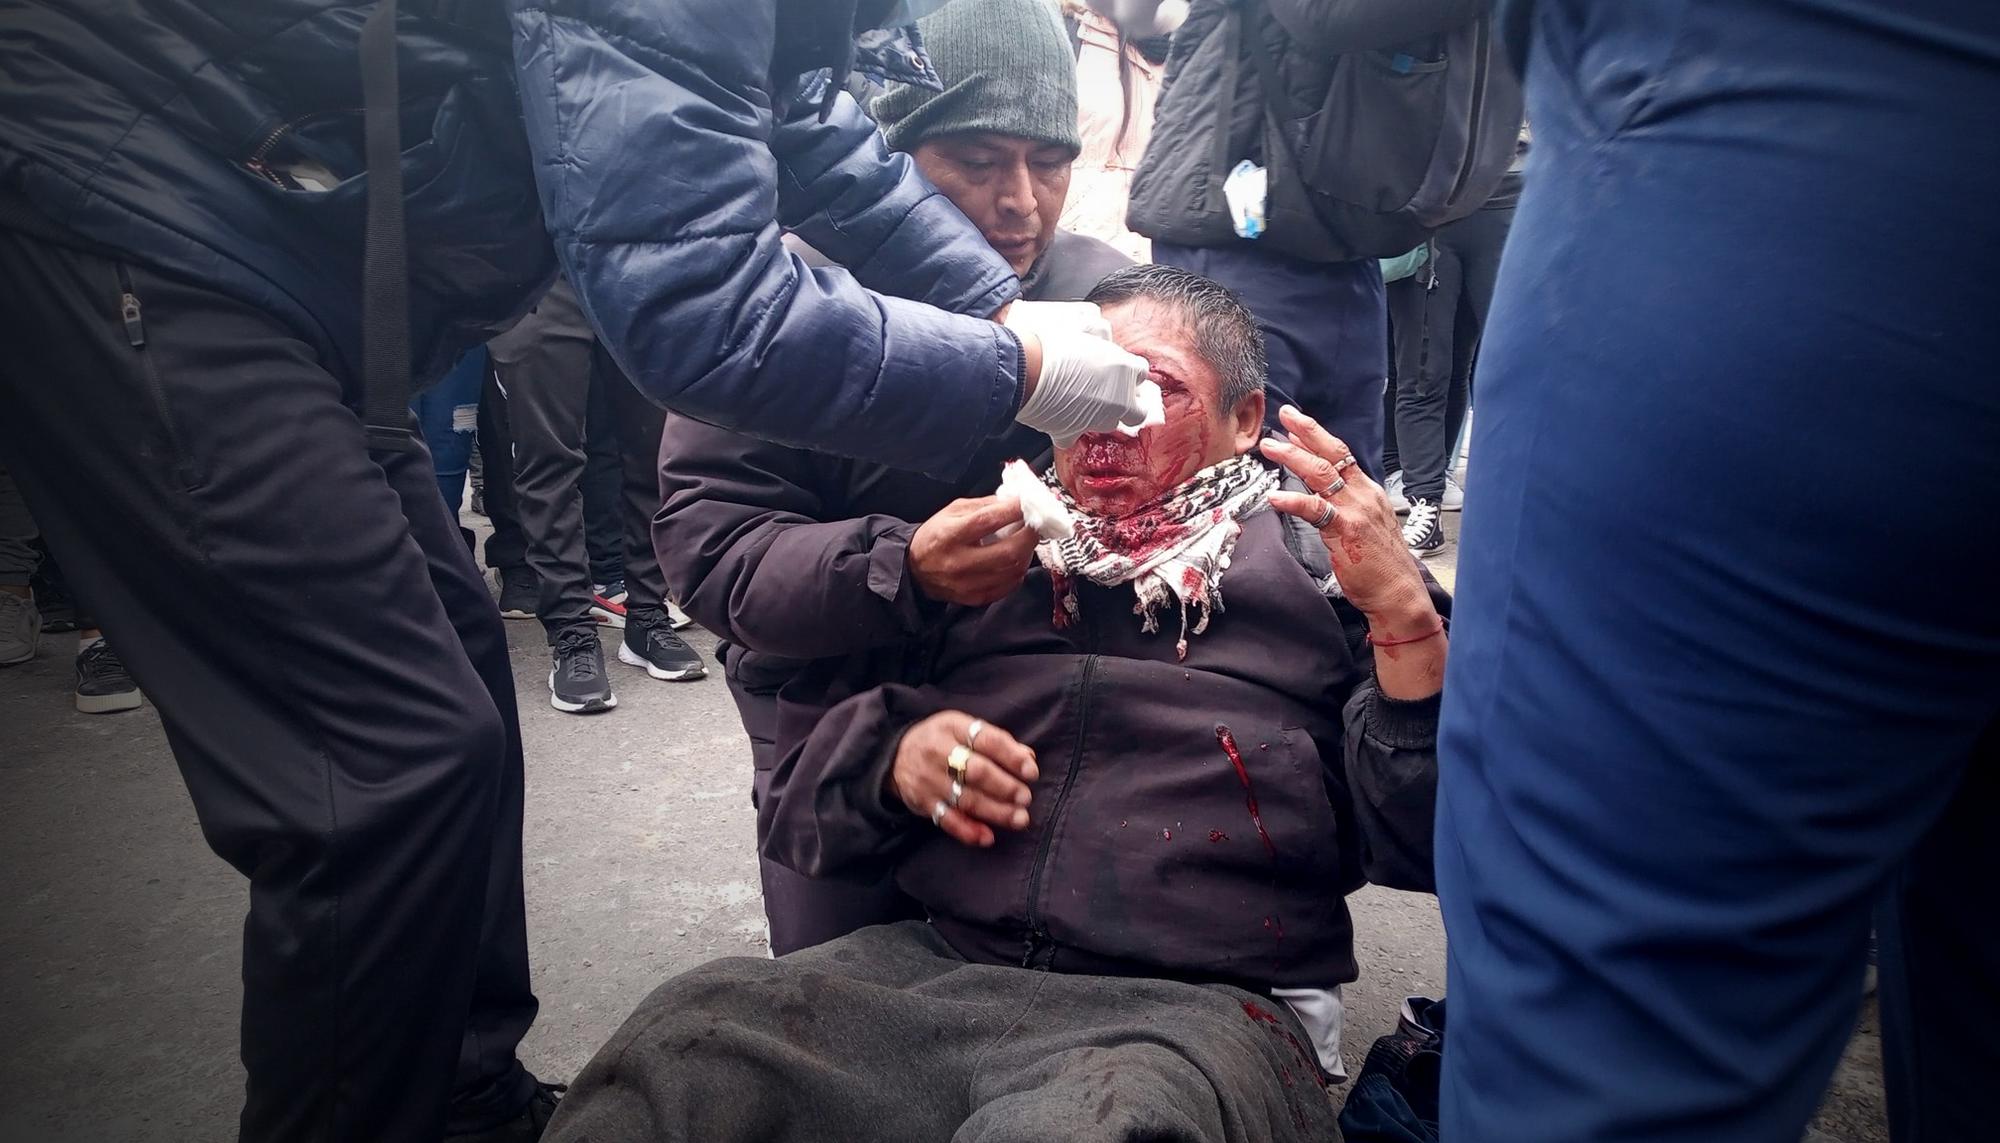 La represión ordenada por el gobernador de la provincia de Jujuy, Gerardo Morales, ha provocado centenares de heridos.